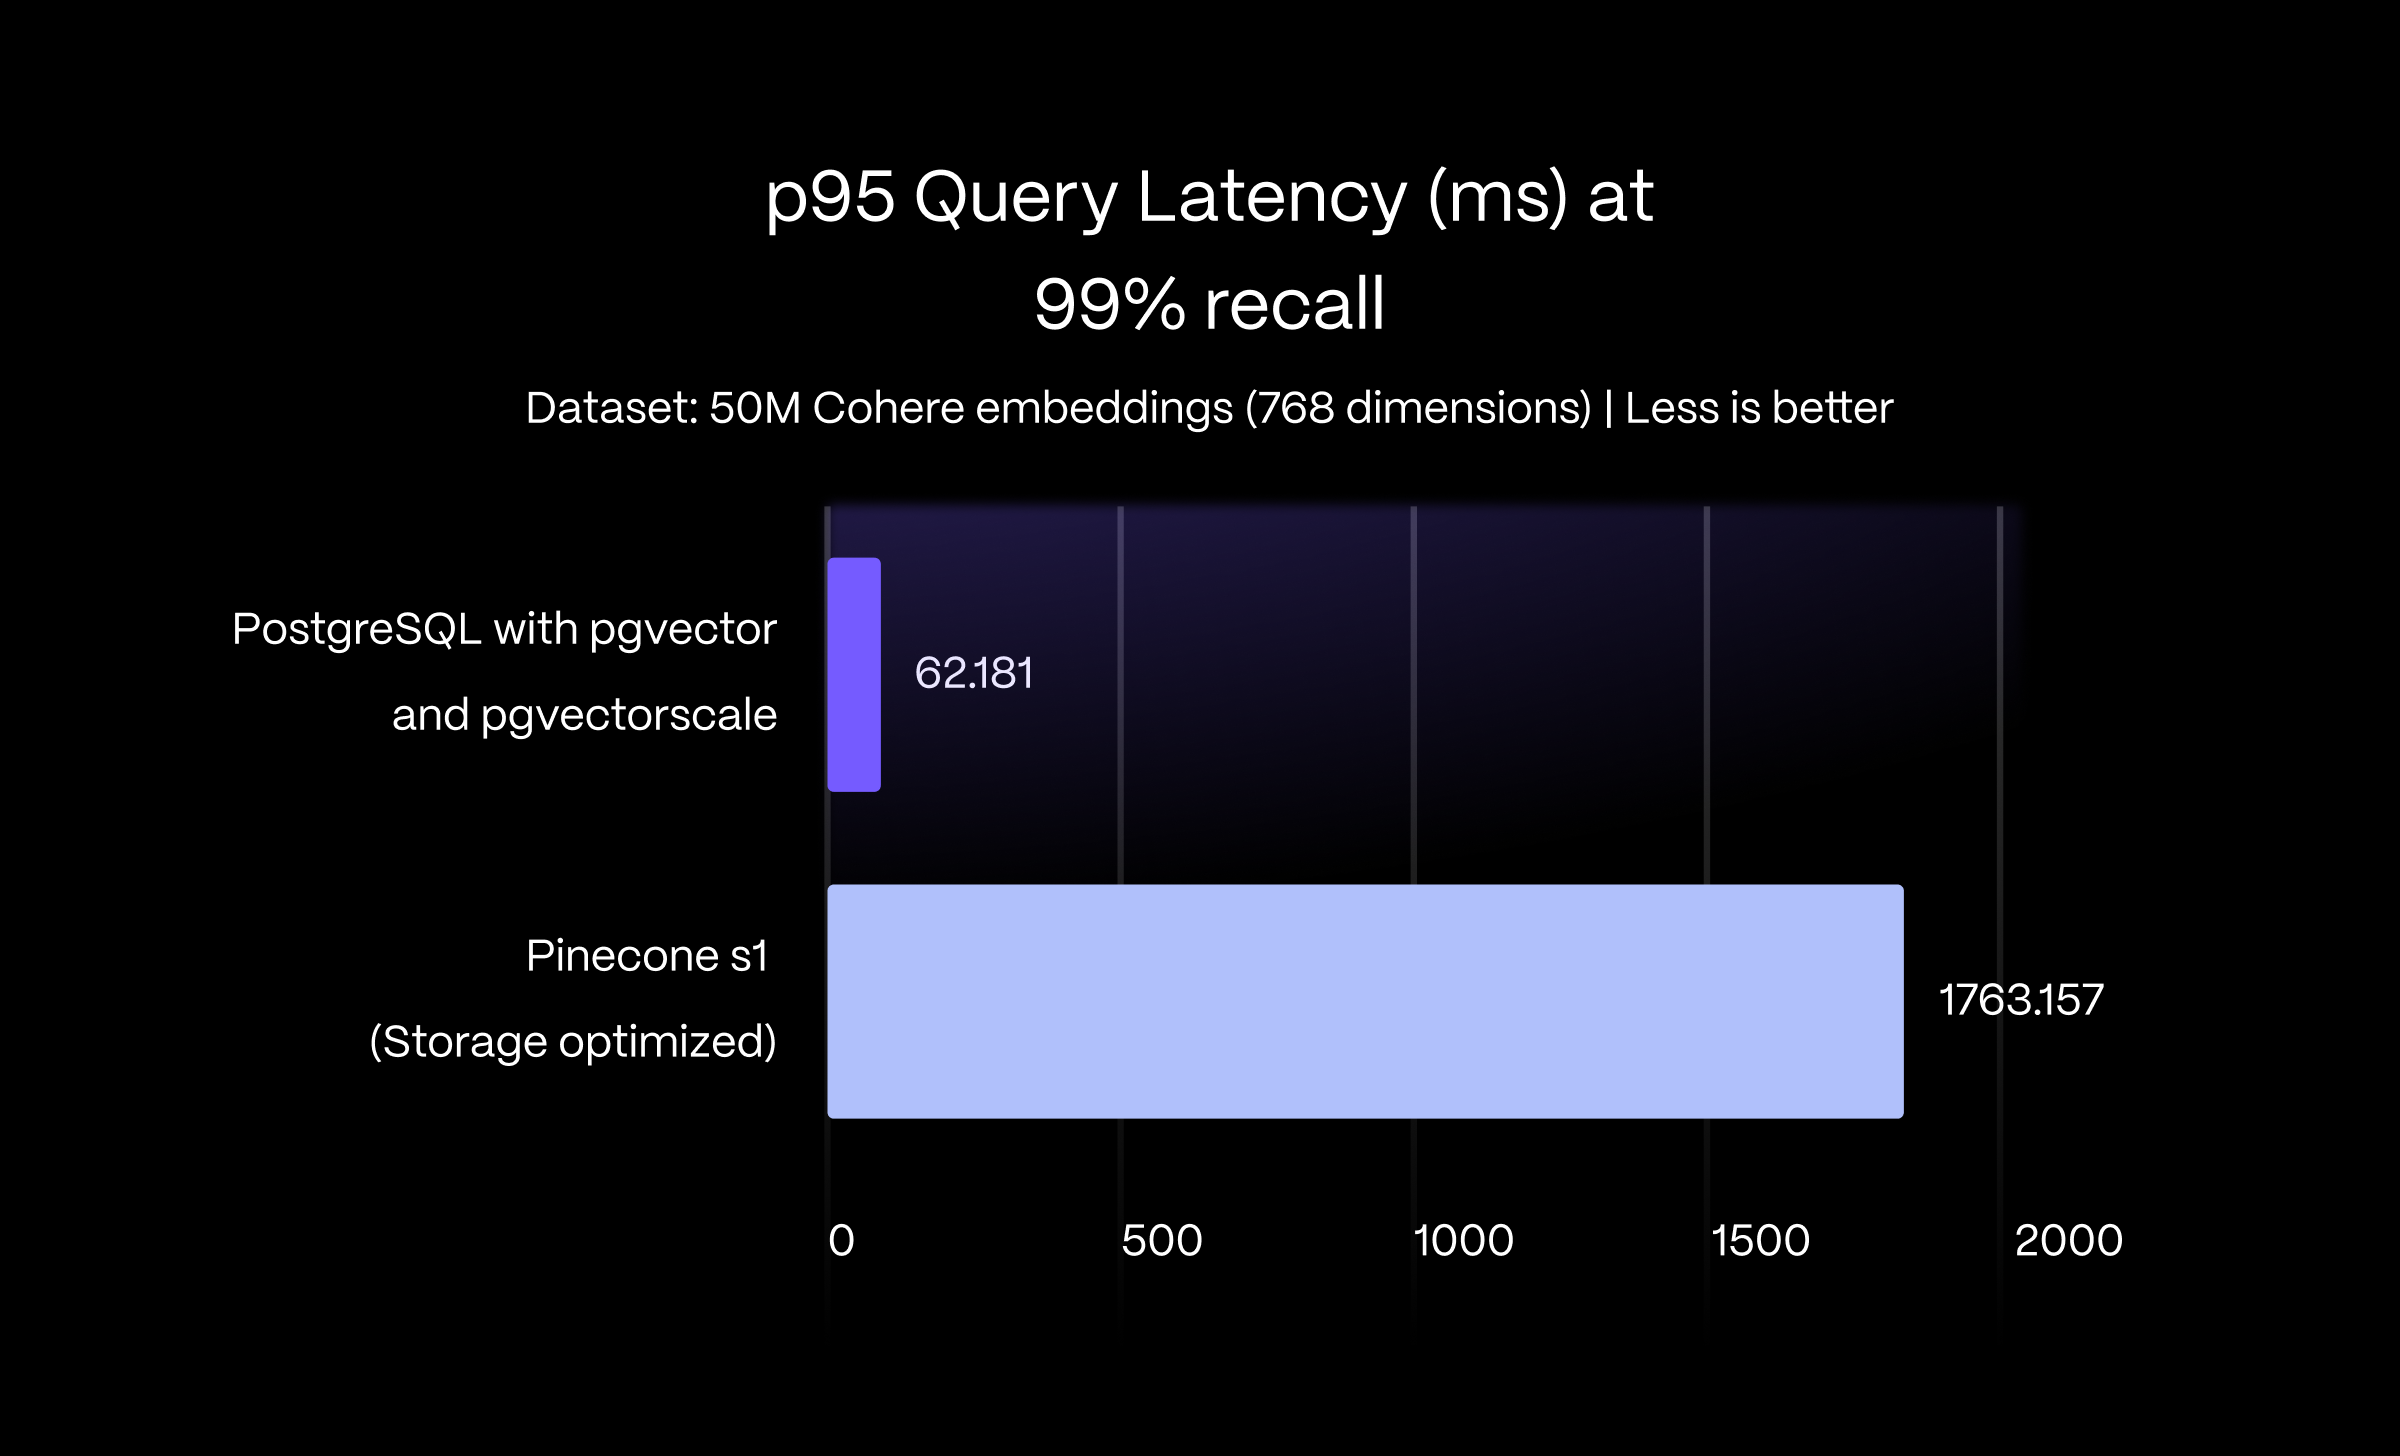 条形图显示使用 pgvector 和 pgvectorscale 的 PostgreSQL 在 99% recall 时近似最近邻查询的 p95 延迟降低了 28 倍。